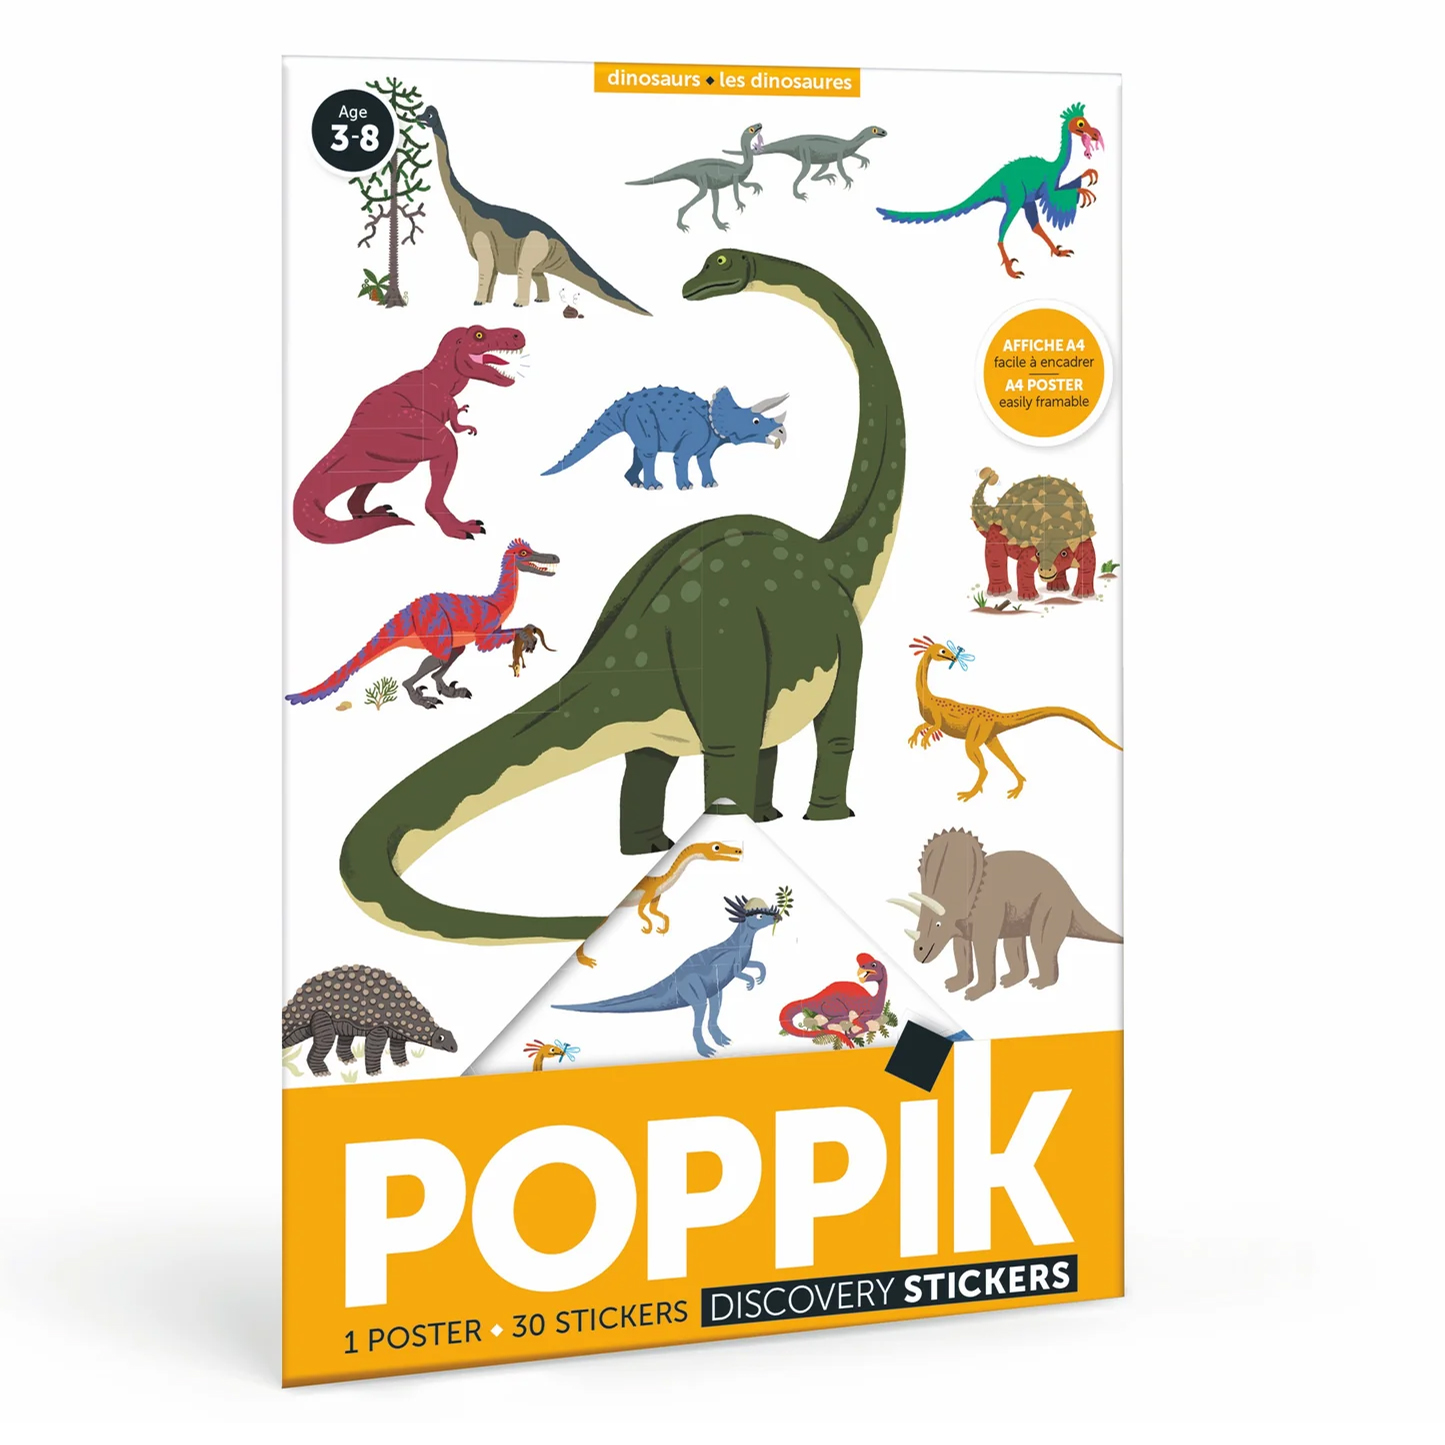  Poppik Mini Sticker Poster - Dinosaurs